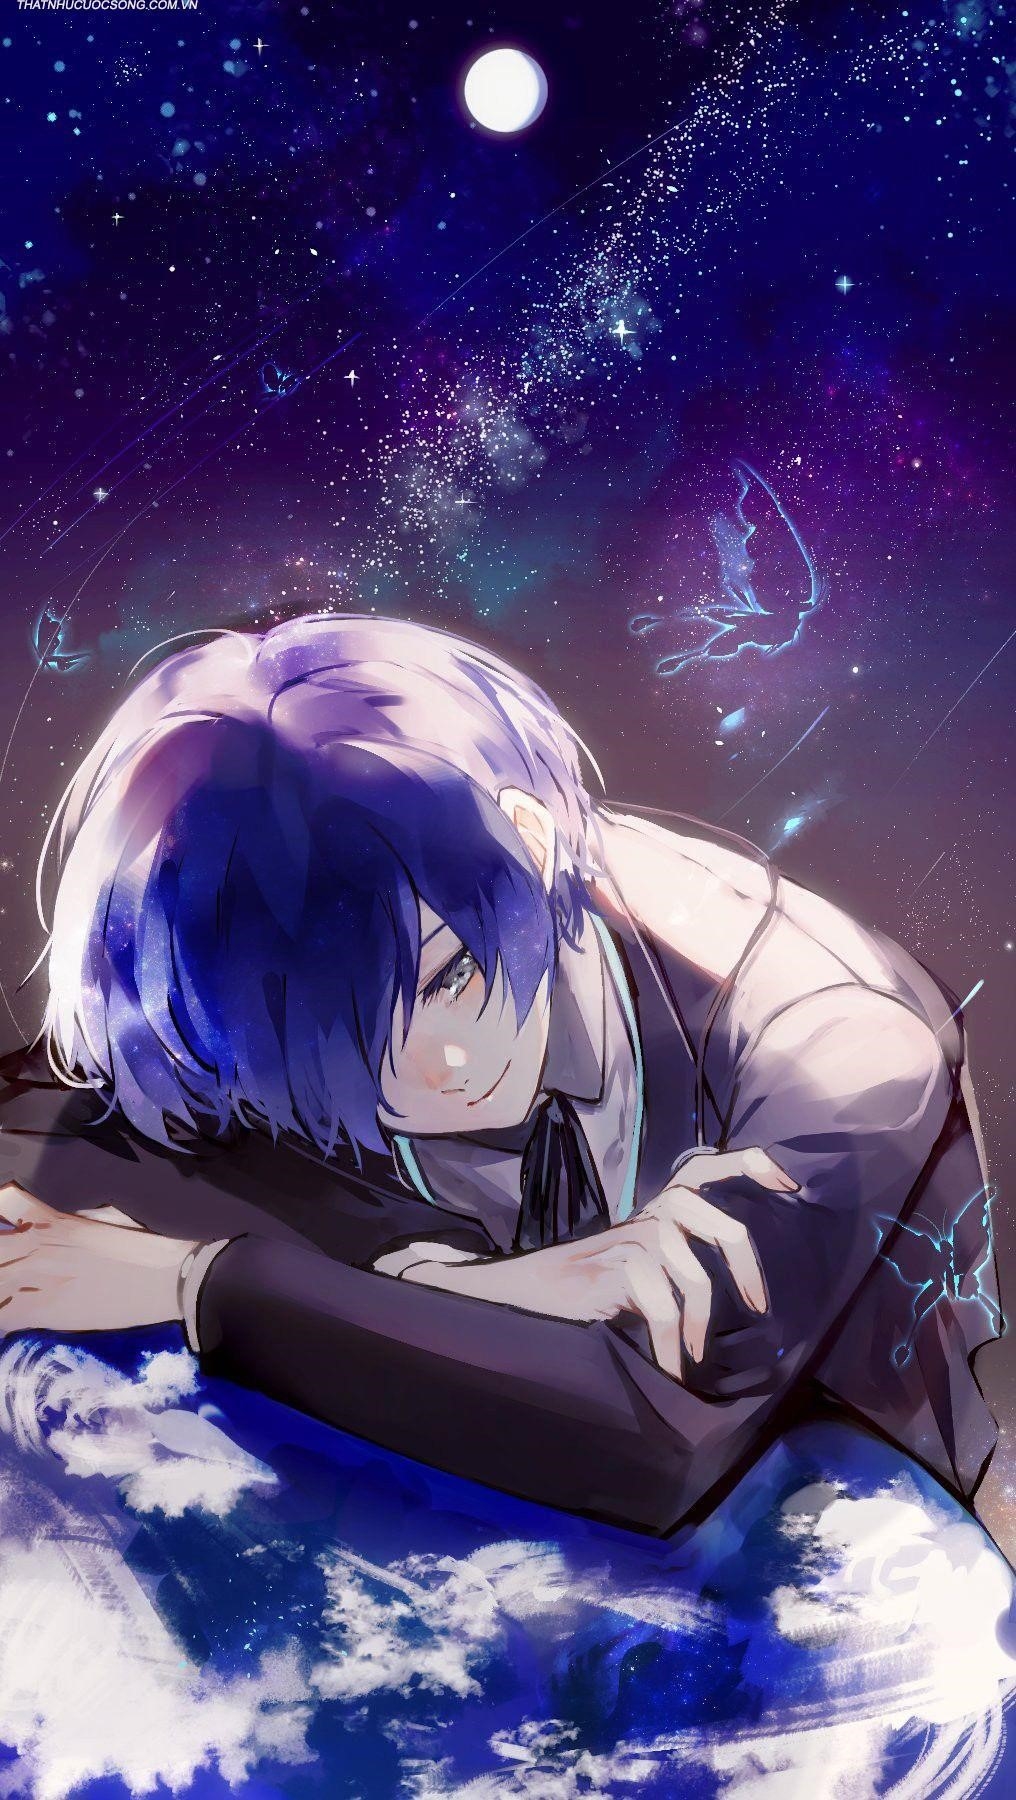 Hình ảnh anime buồn khóc thường mang trong mình một cảm xúc sâu sắc và đau đớn, thể hiện đau khổ và nỗi buồn của nhân vật, tạo nên một khung cảnh đầy xúc cảm và cảm động.